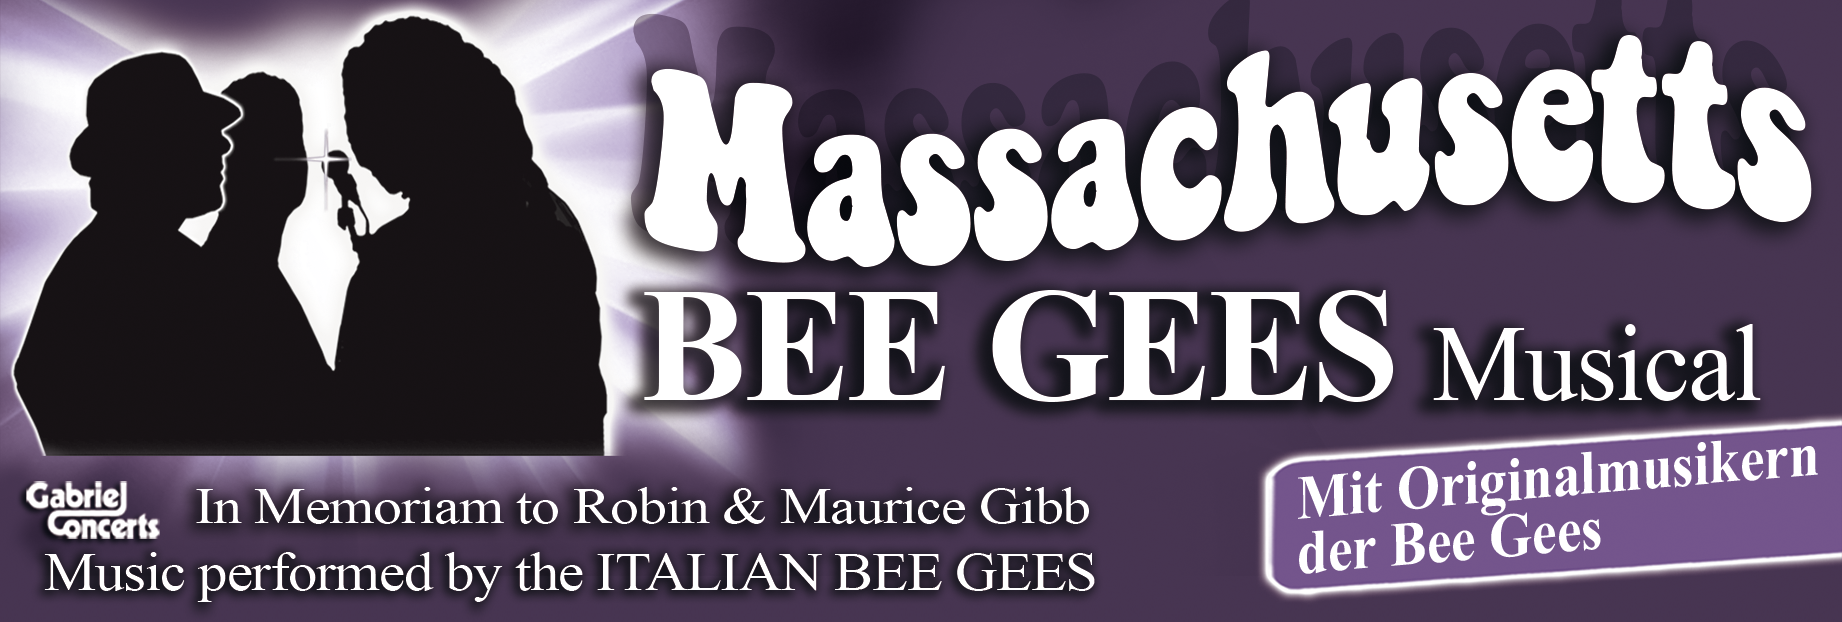 Massachusetts - Bee Gees Musical